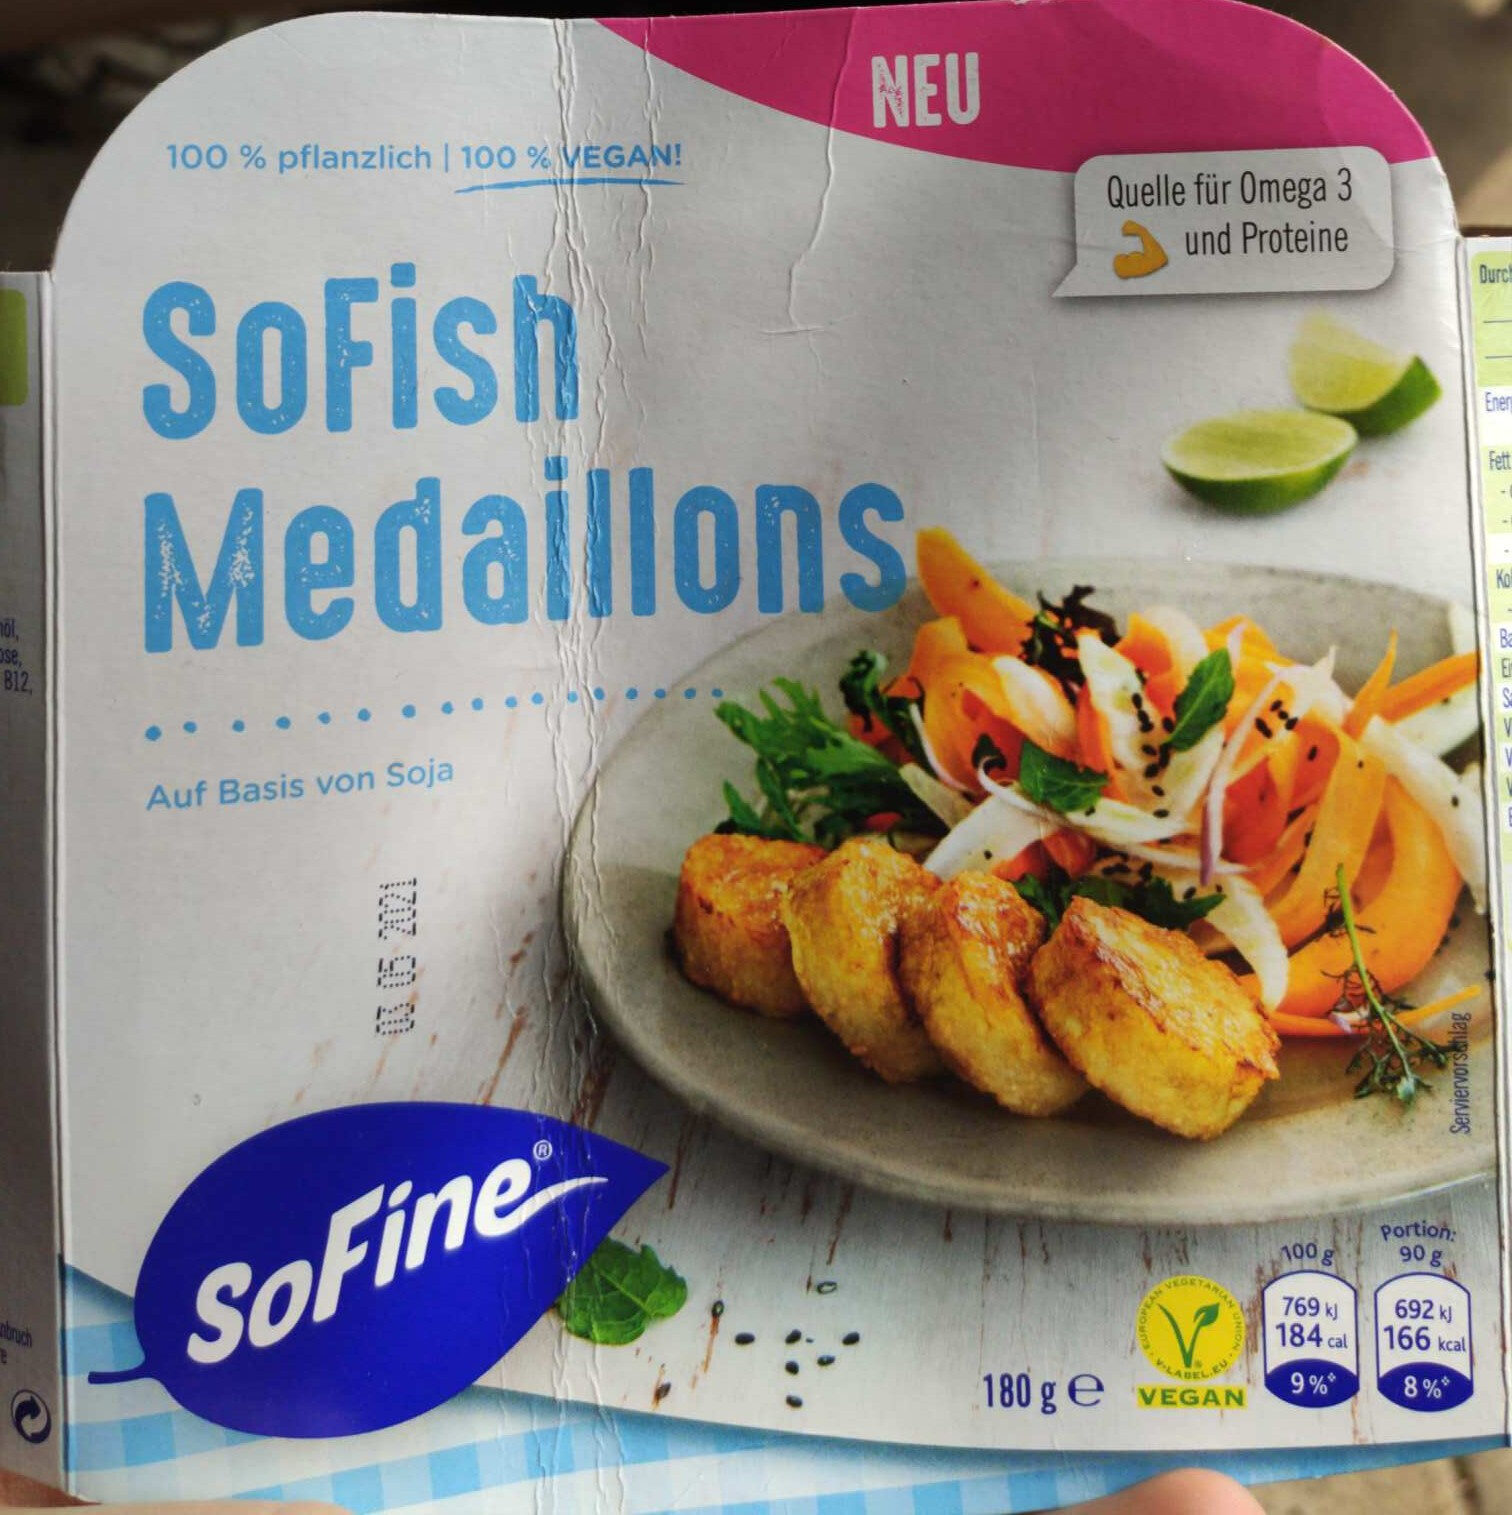 SoFish Medaillons - Produkt - en